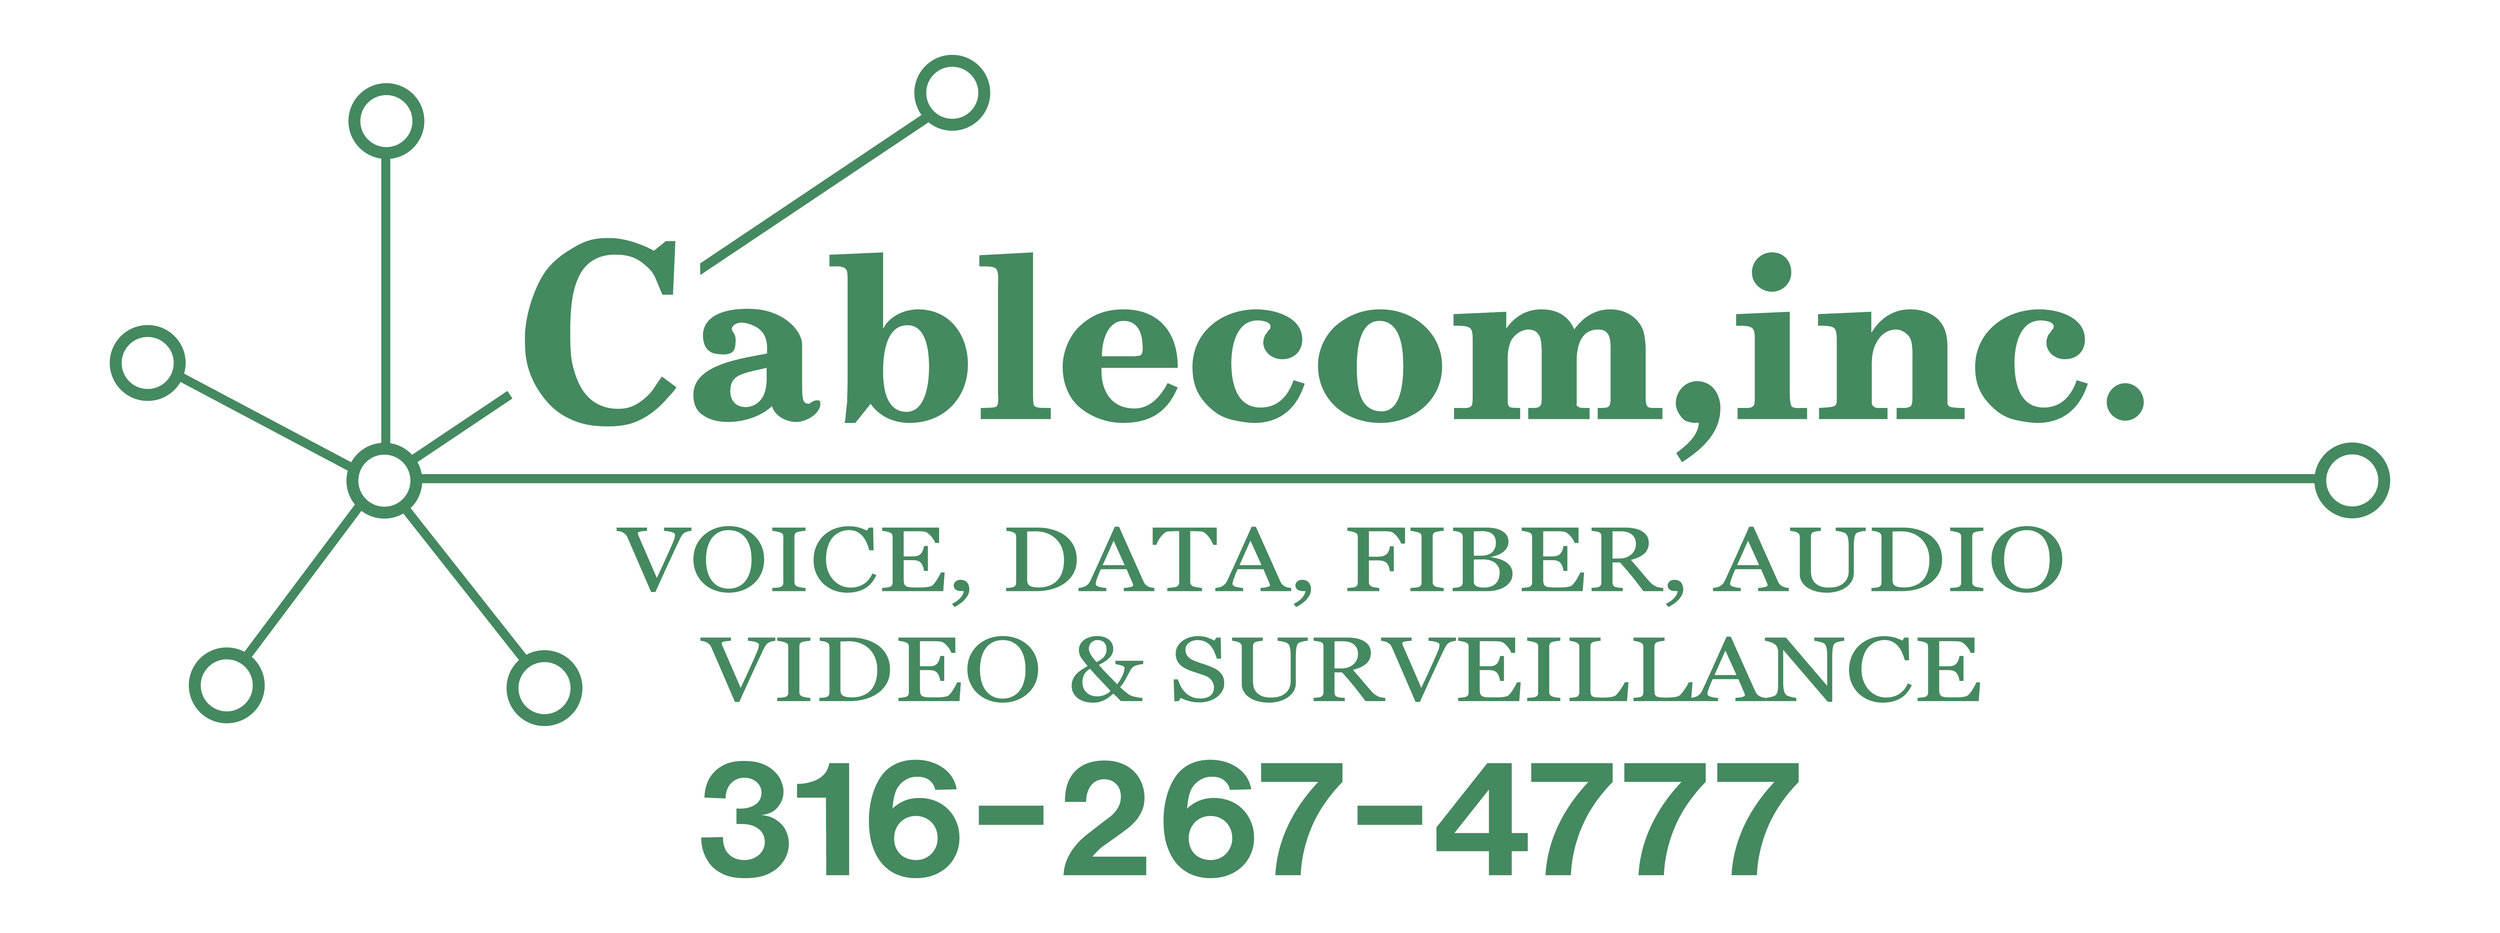 Cablecom Logo - Web.jpg